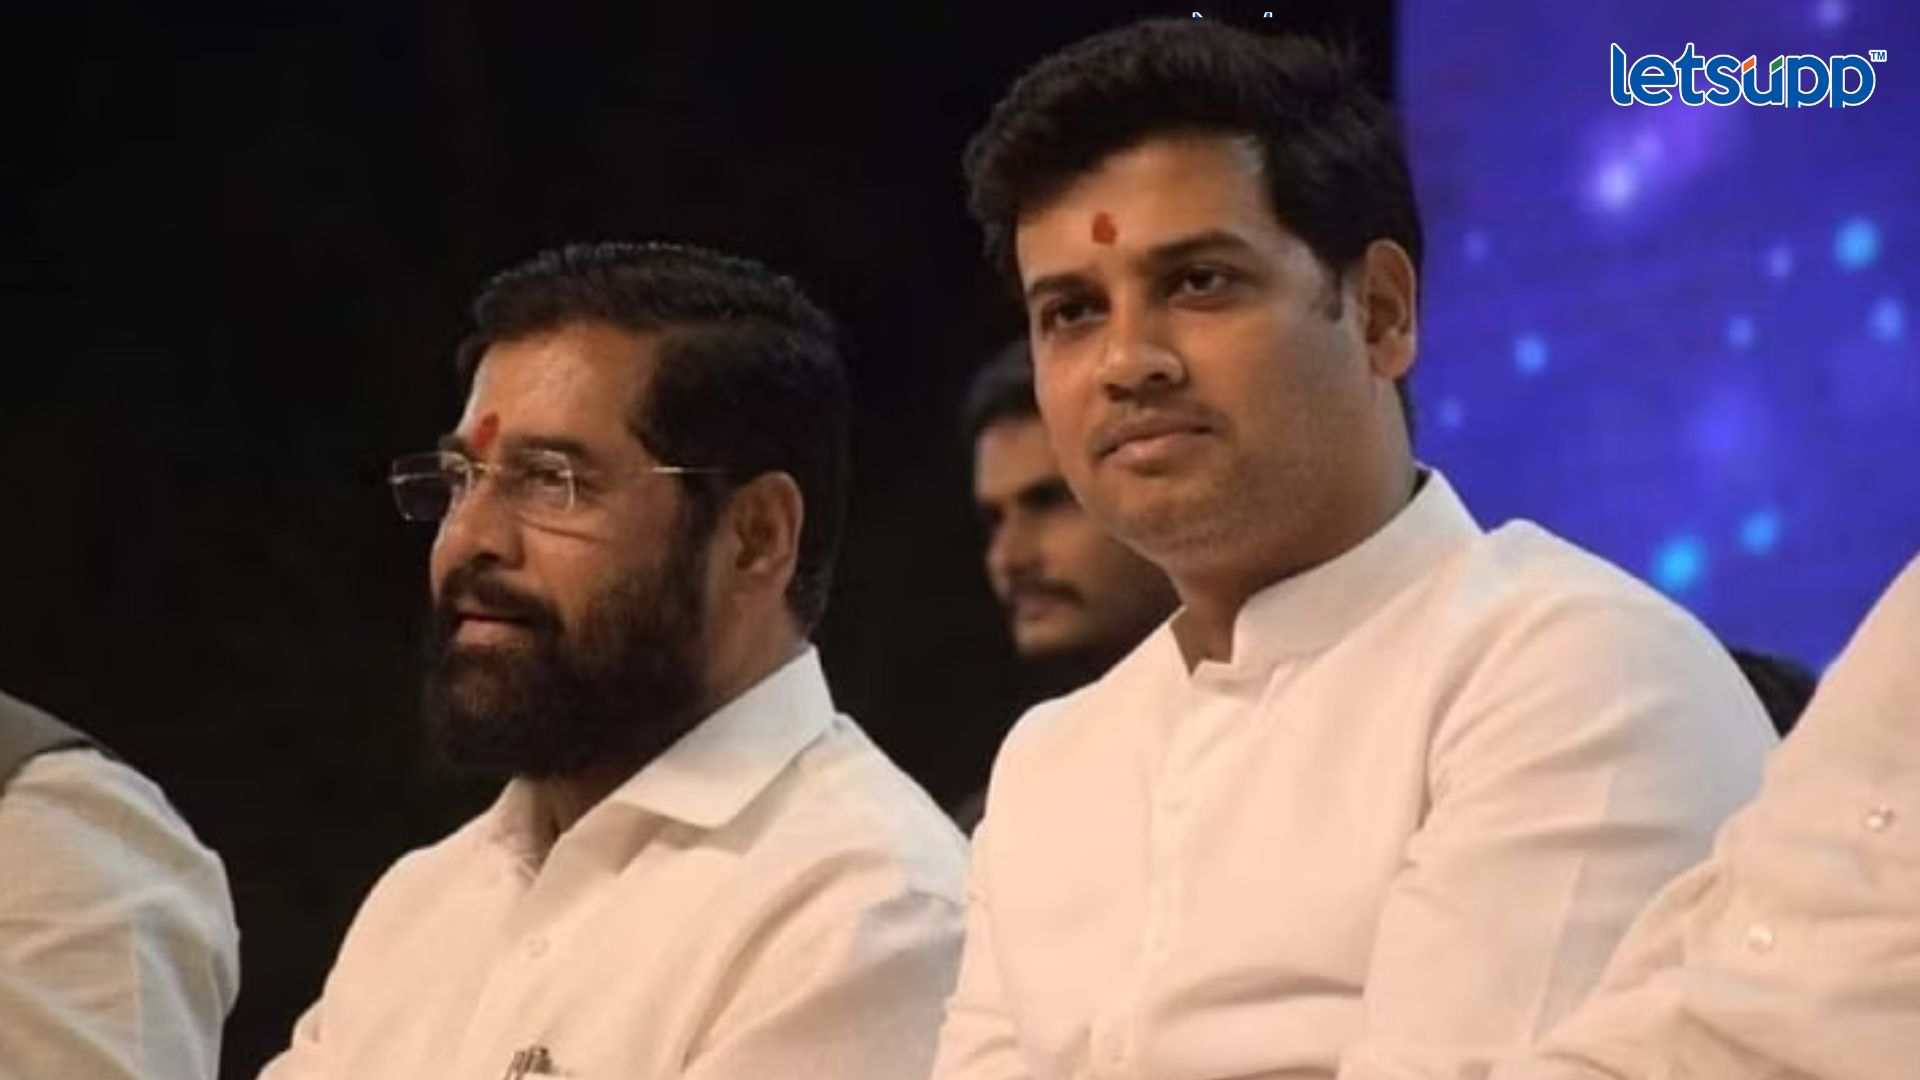 Maharashtra Politics : भाजप CM शिंदेच्या मुलाला का करतयं टार्गेट?; राष्ट्रवादीनं शोधलं उत्तर